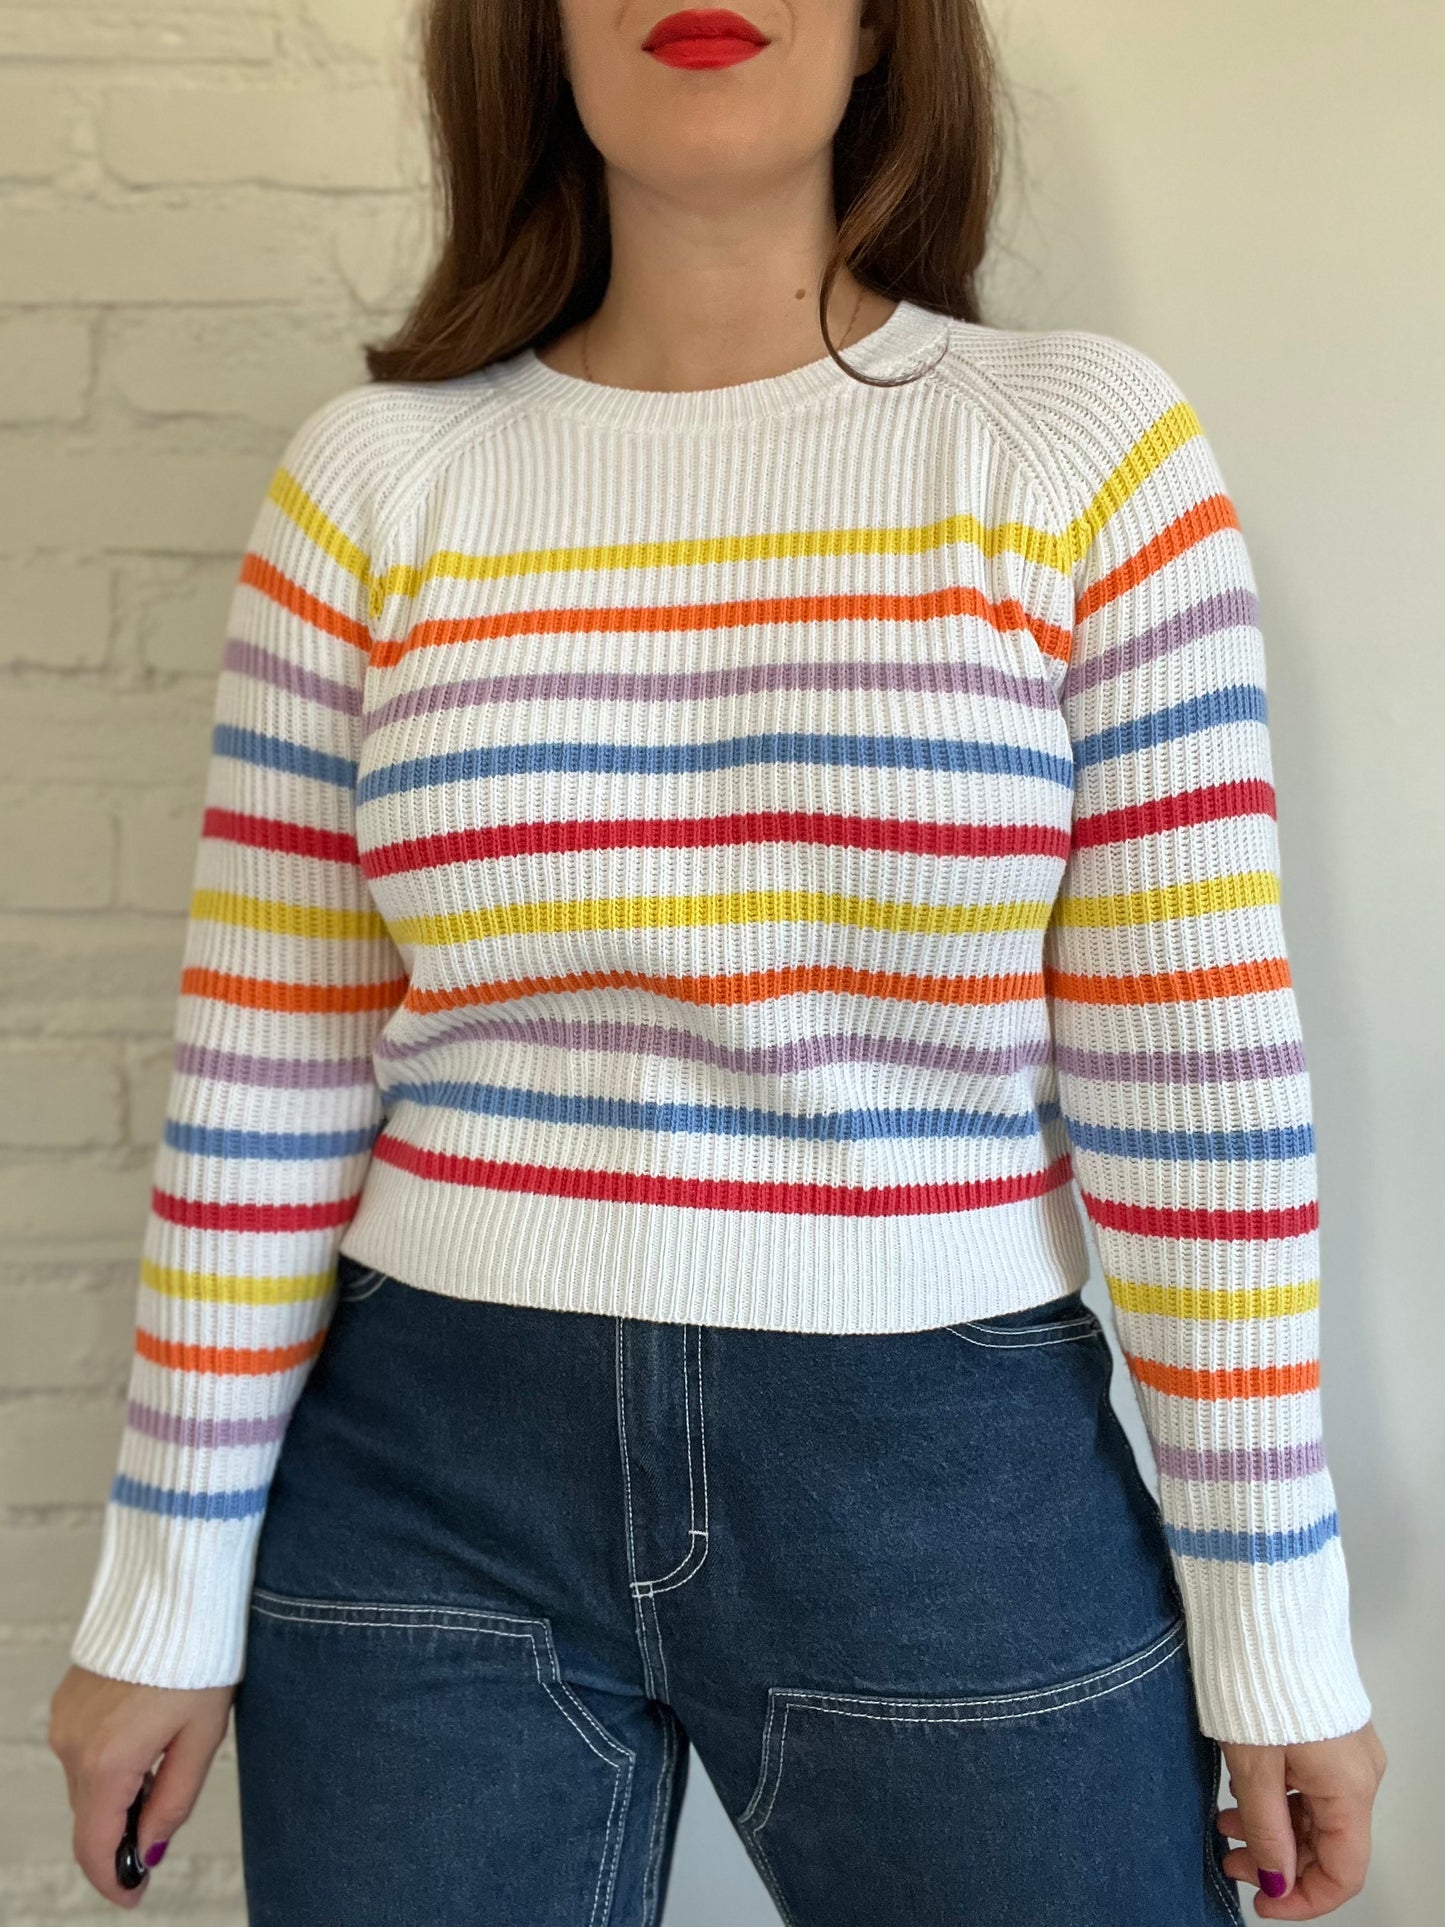 Rainbow Striped Rib Knit Sweater - M